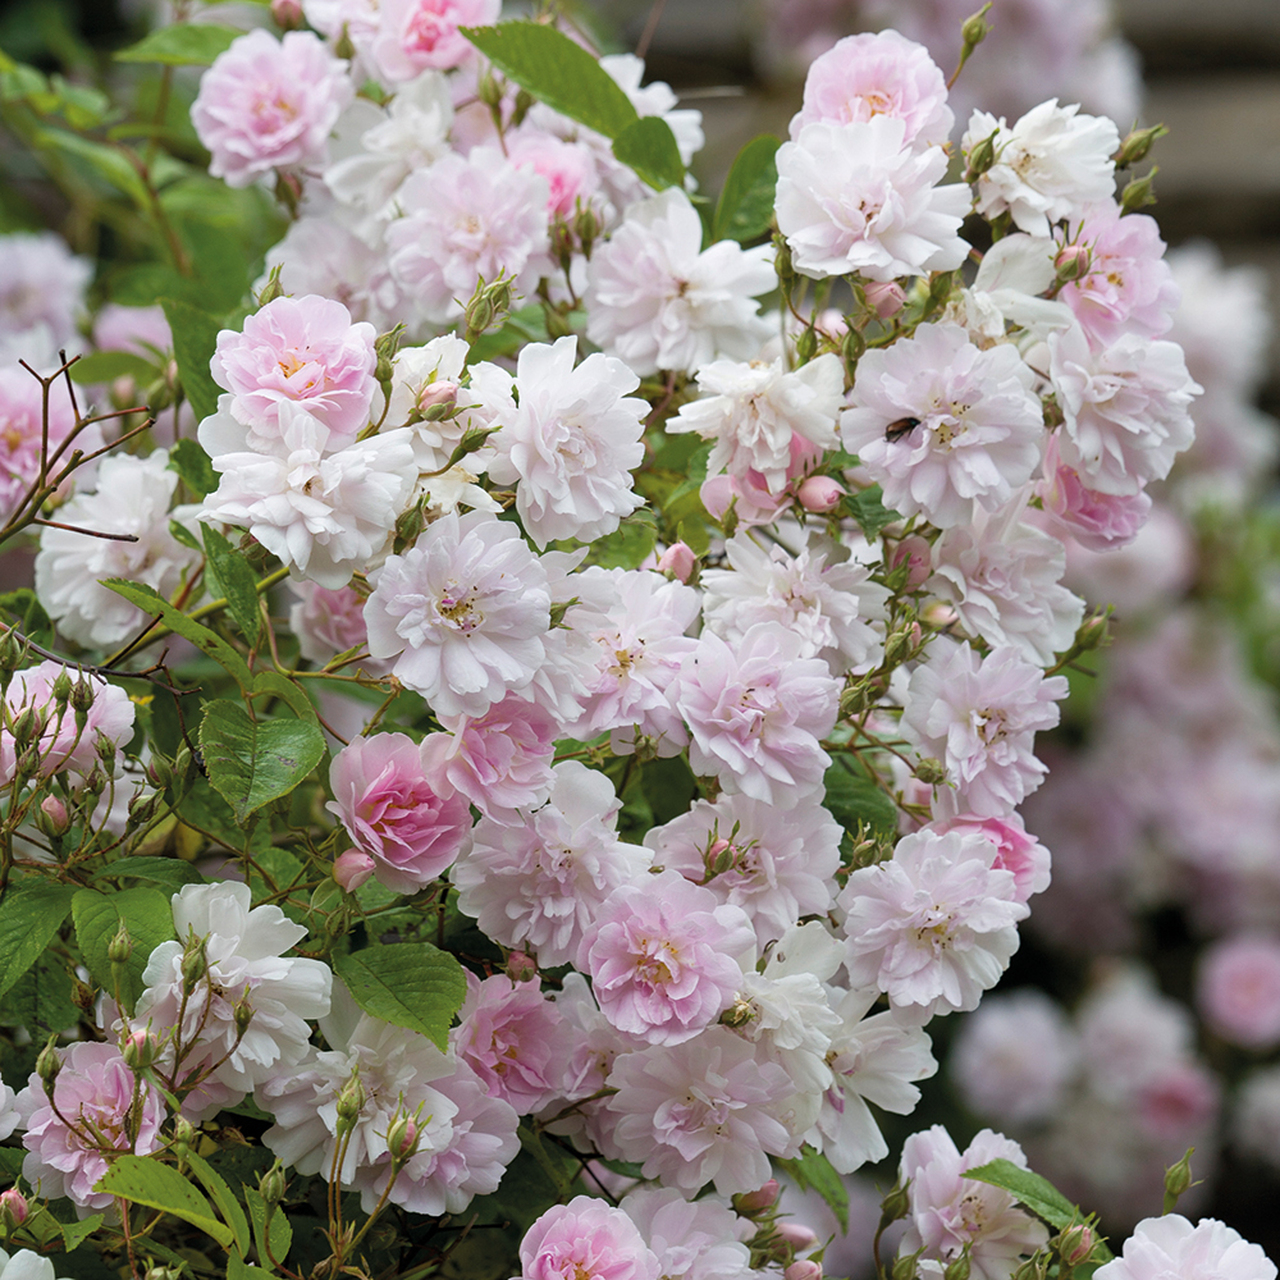 Pruning roses - the Sissinghurst method